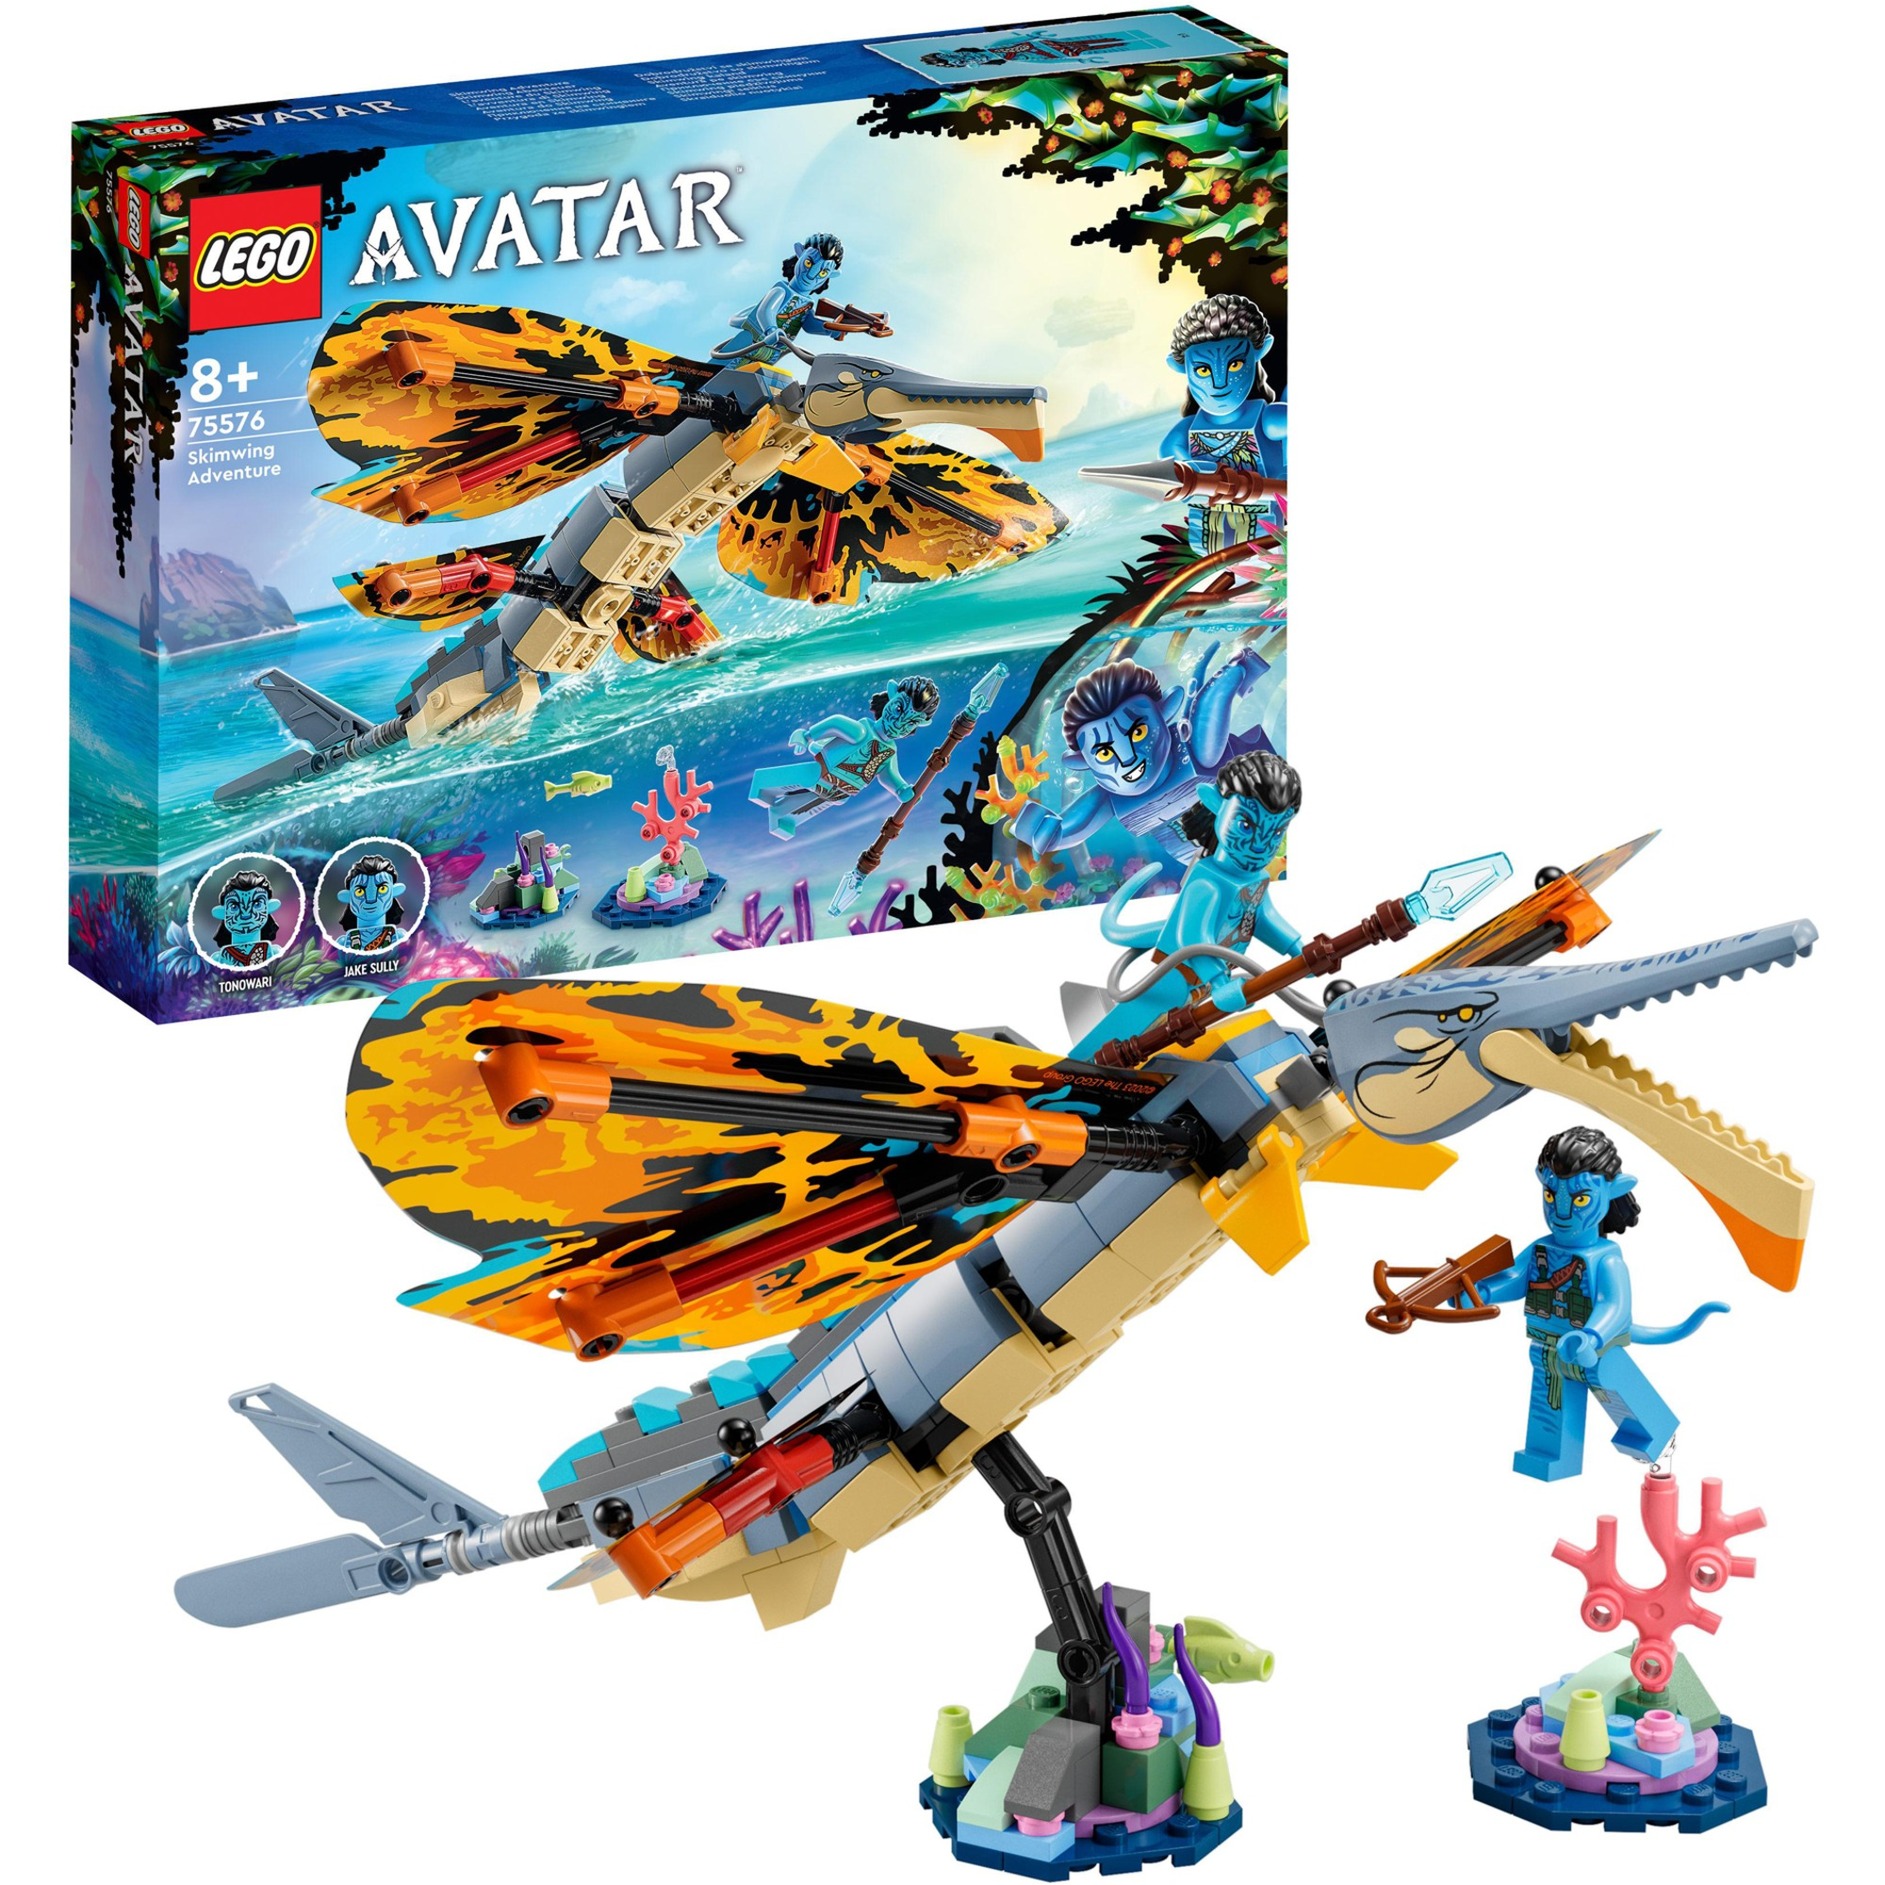 75576 Avatar Skimwing Abenteuer, Konstruktionsspielzeug